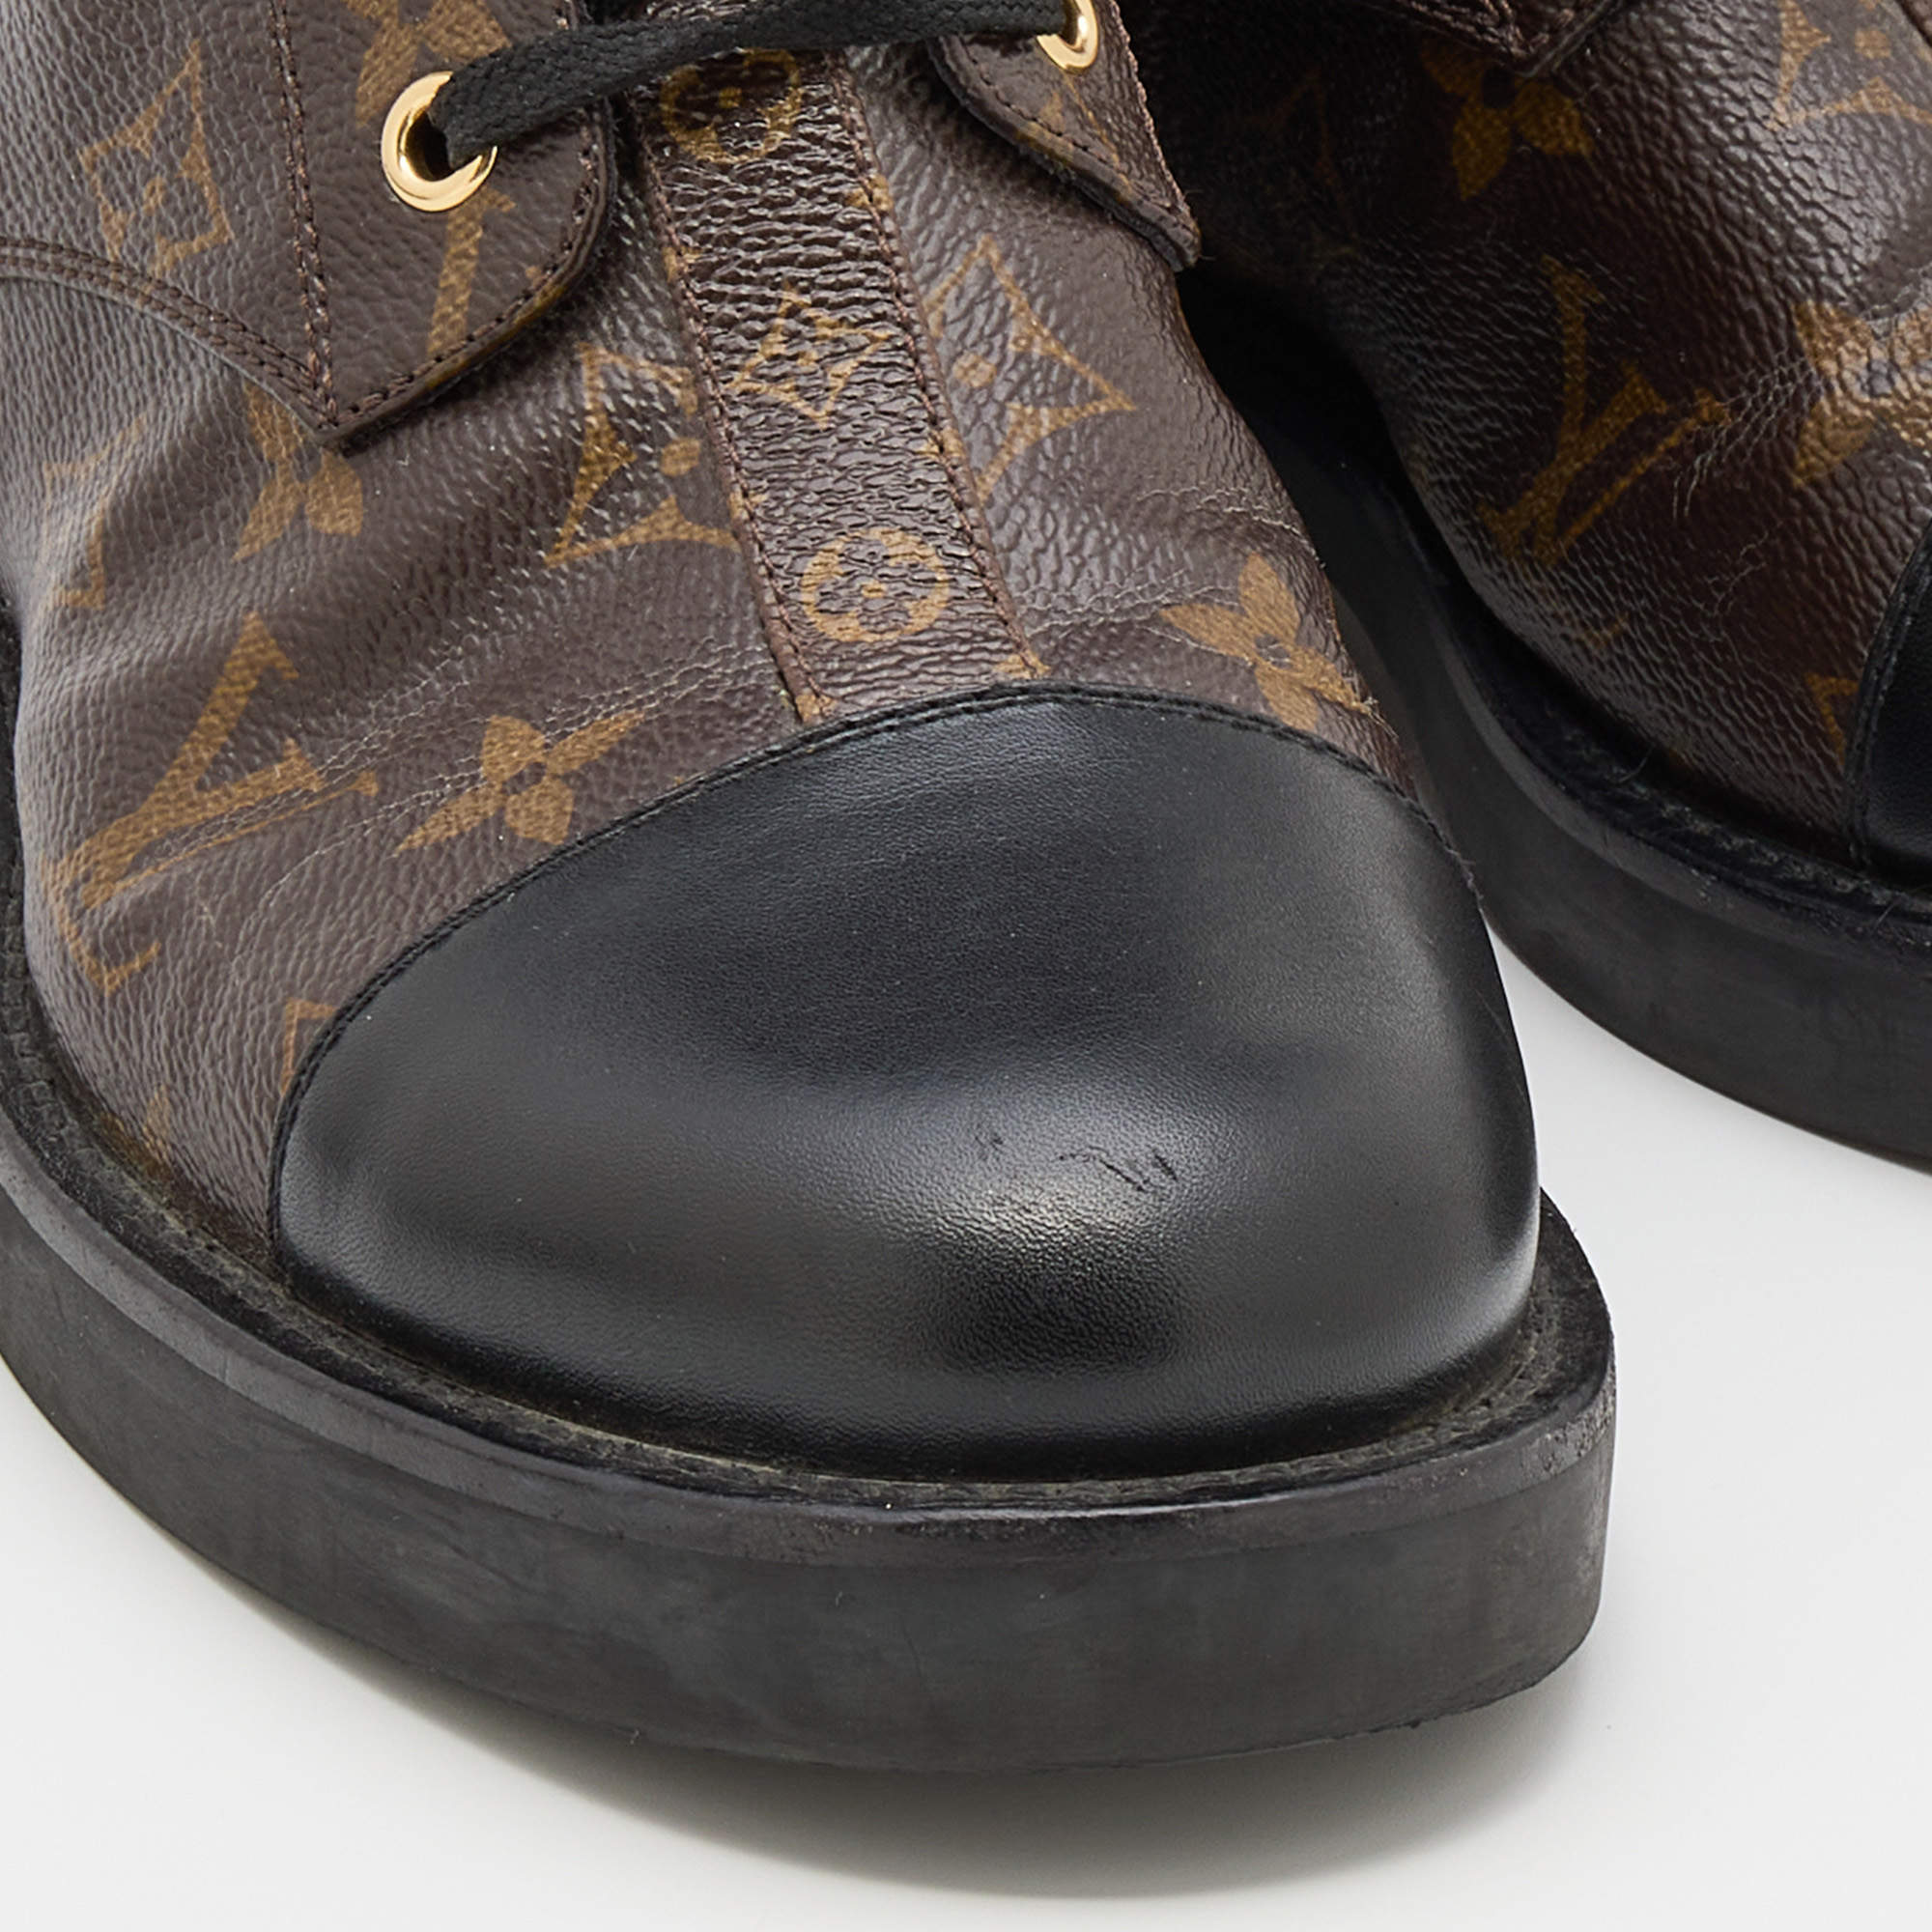 ✨NEW ARRIVAL✨ Louis Vuitton Cognac Monogram Ranger Combat Boots